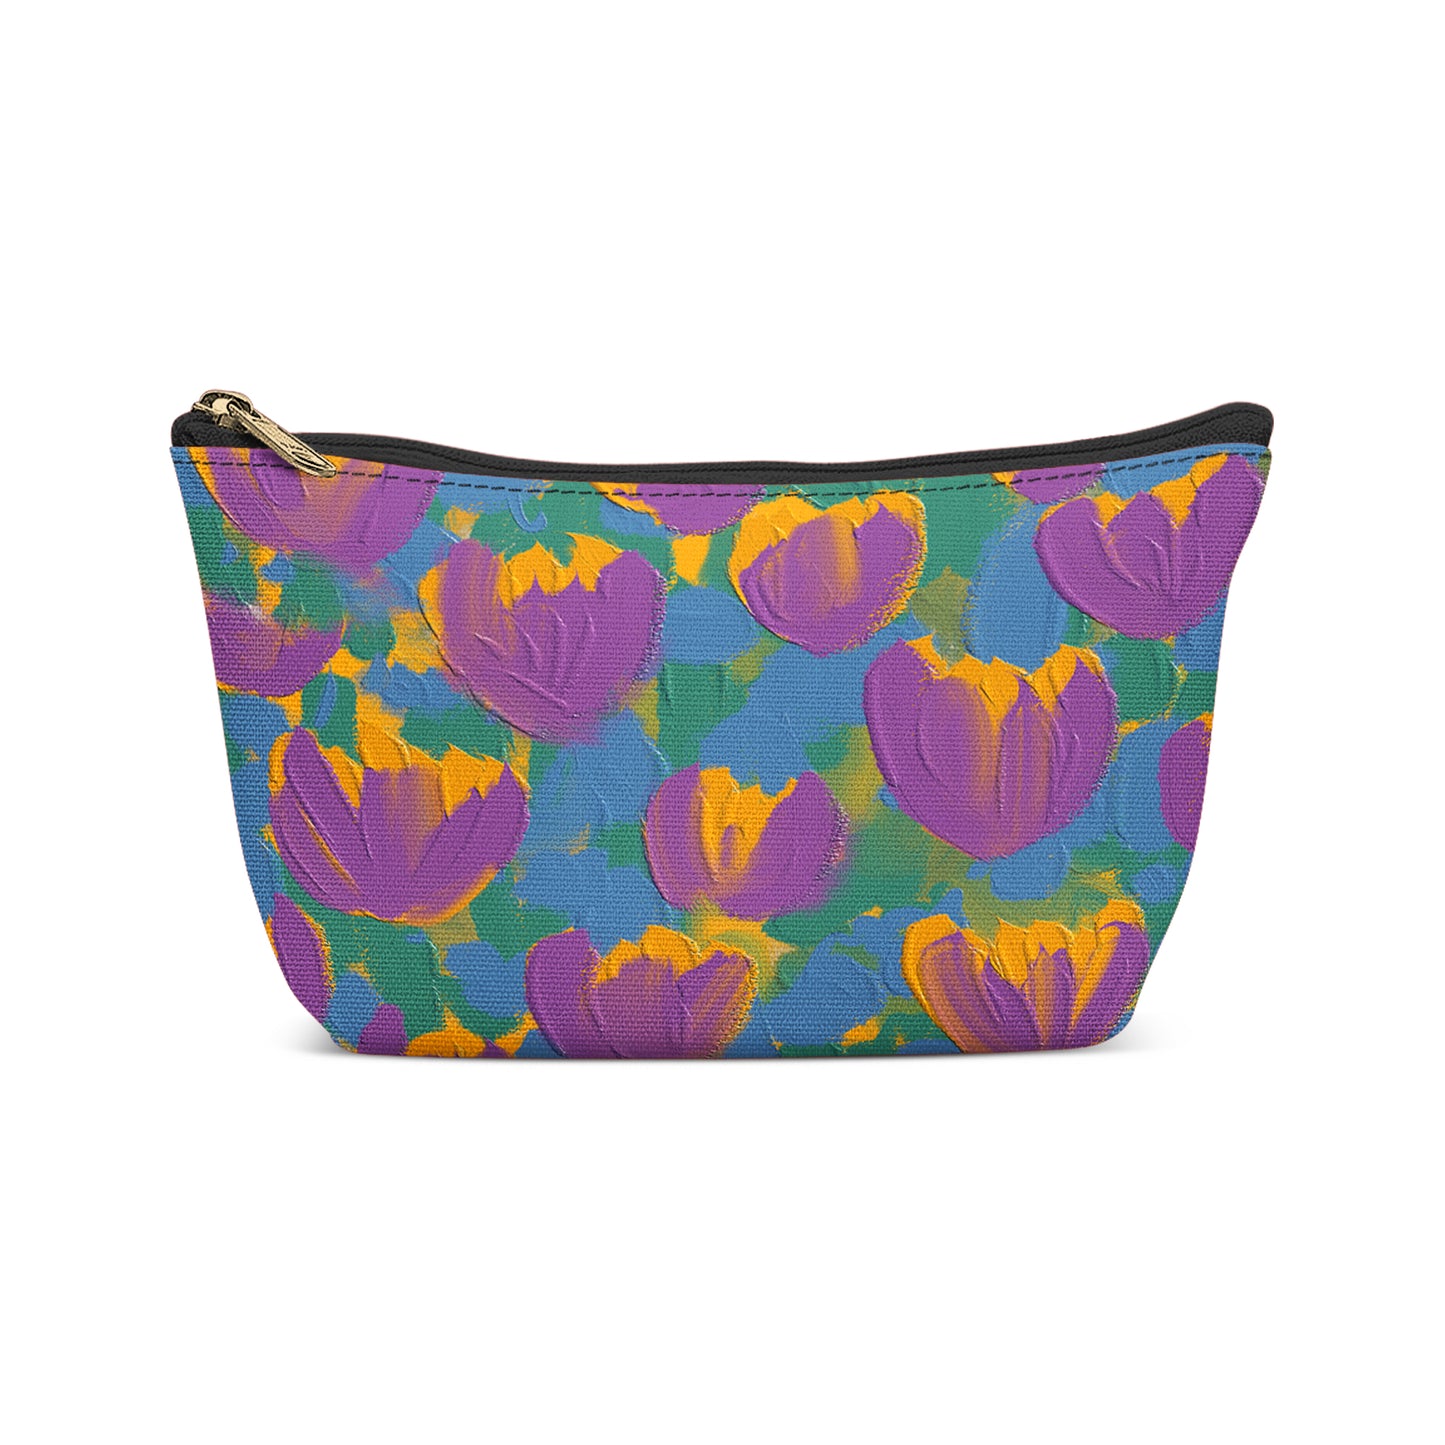 Painted Crocus Flowers Pattern Makeup Bag